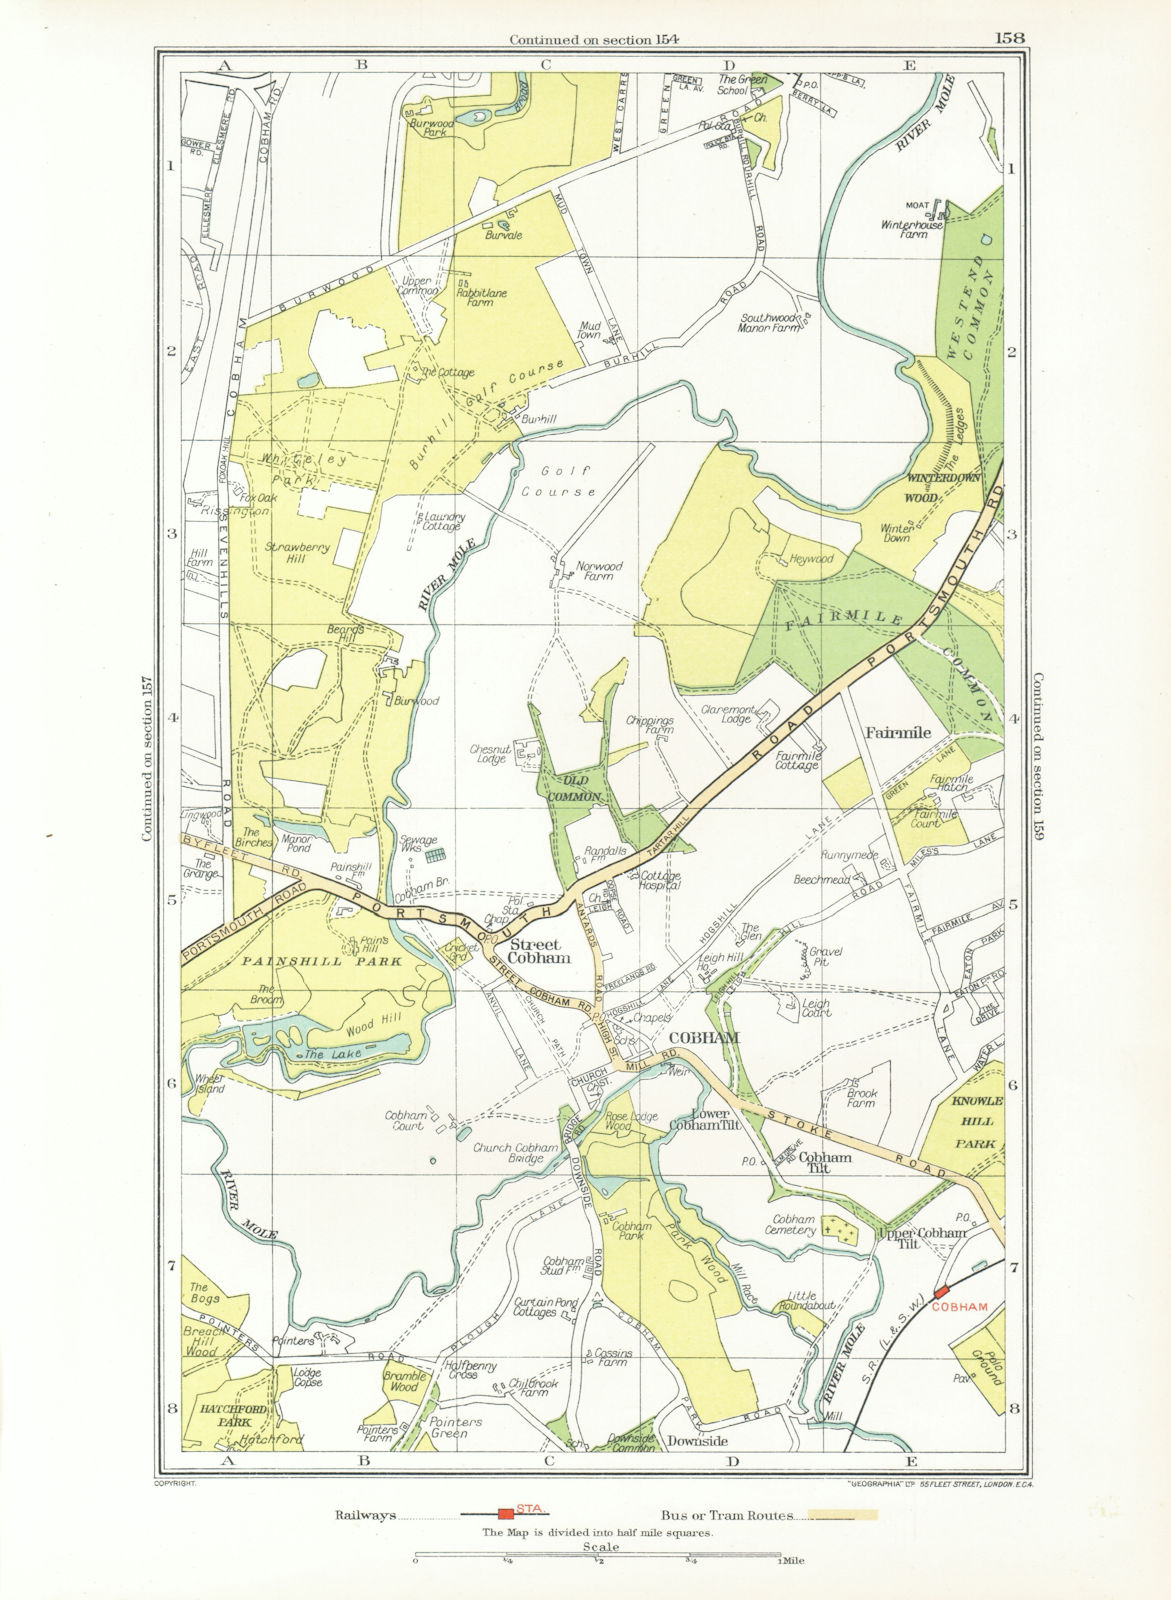 COBHAM. Stoke d'Abernon Whiteley Village Fairmile Burwood Park (Surrey) 1933 map